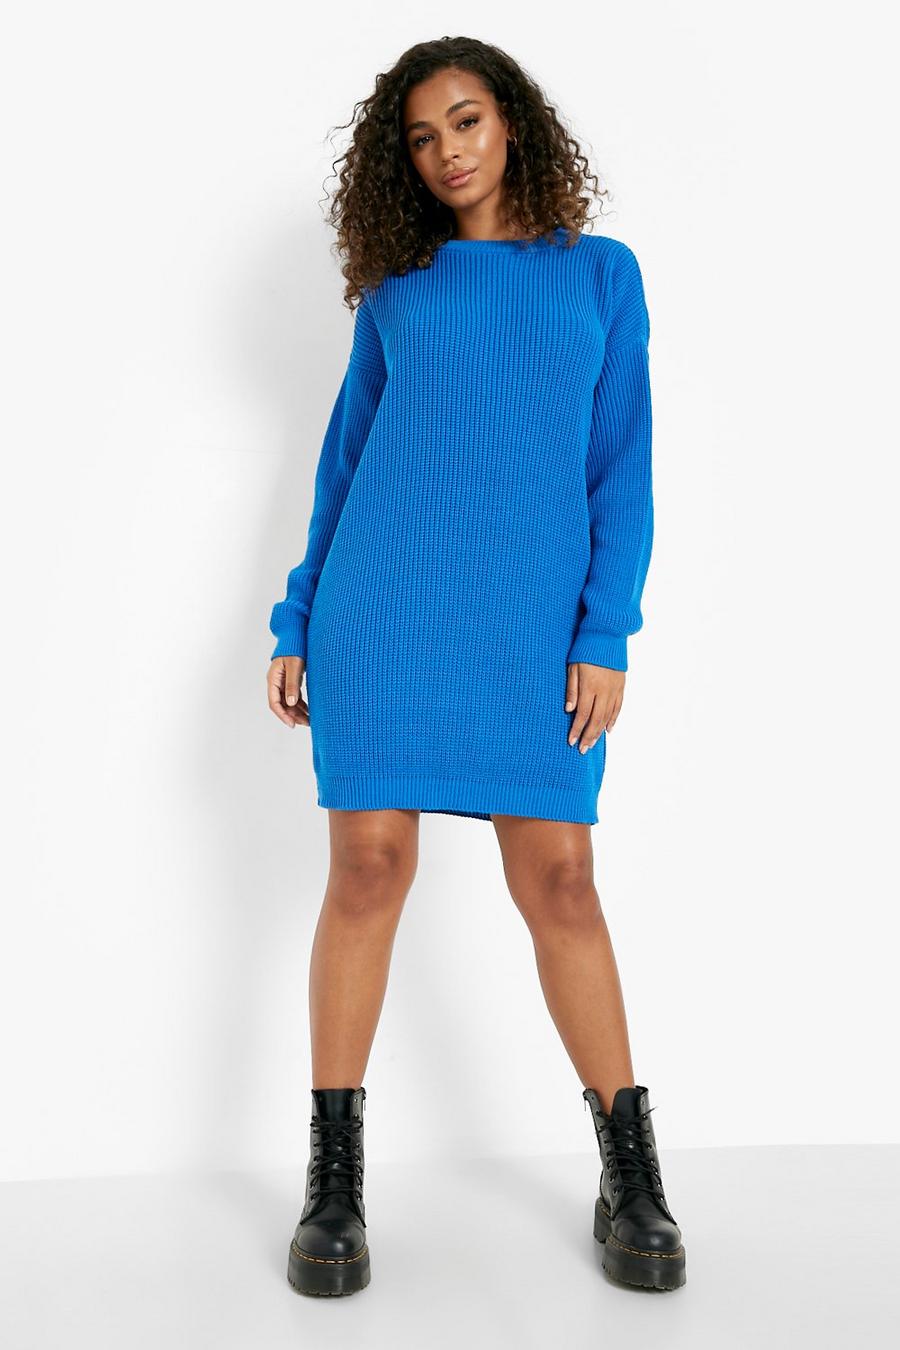 Cobalt blue Crew Neck Sweater Dress